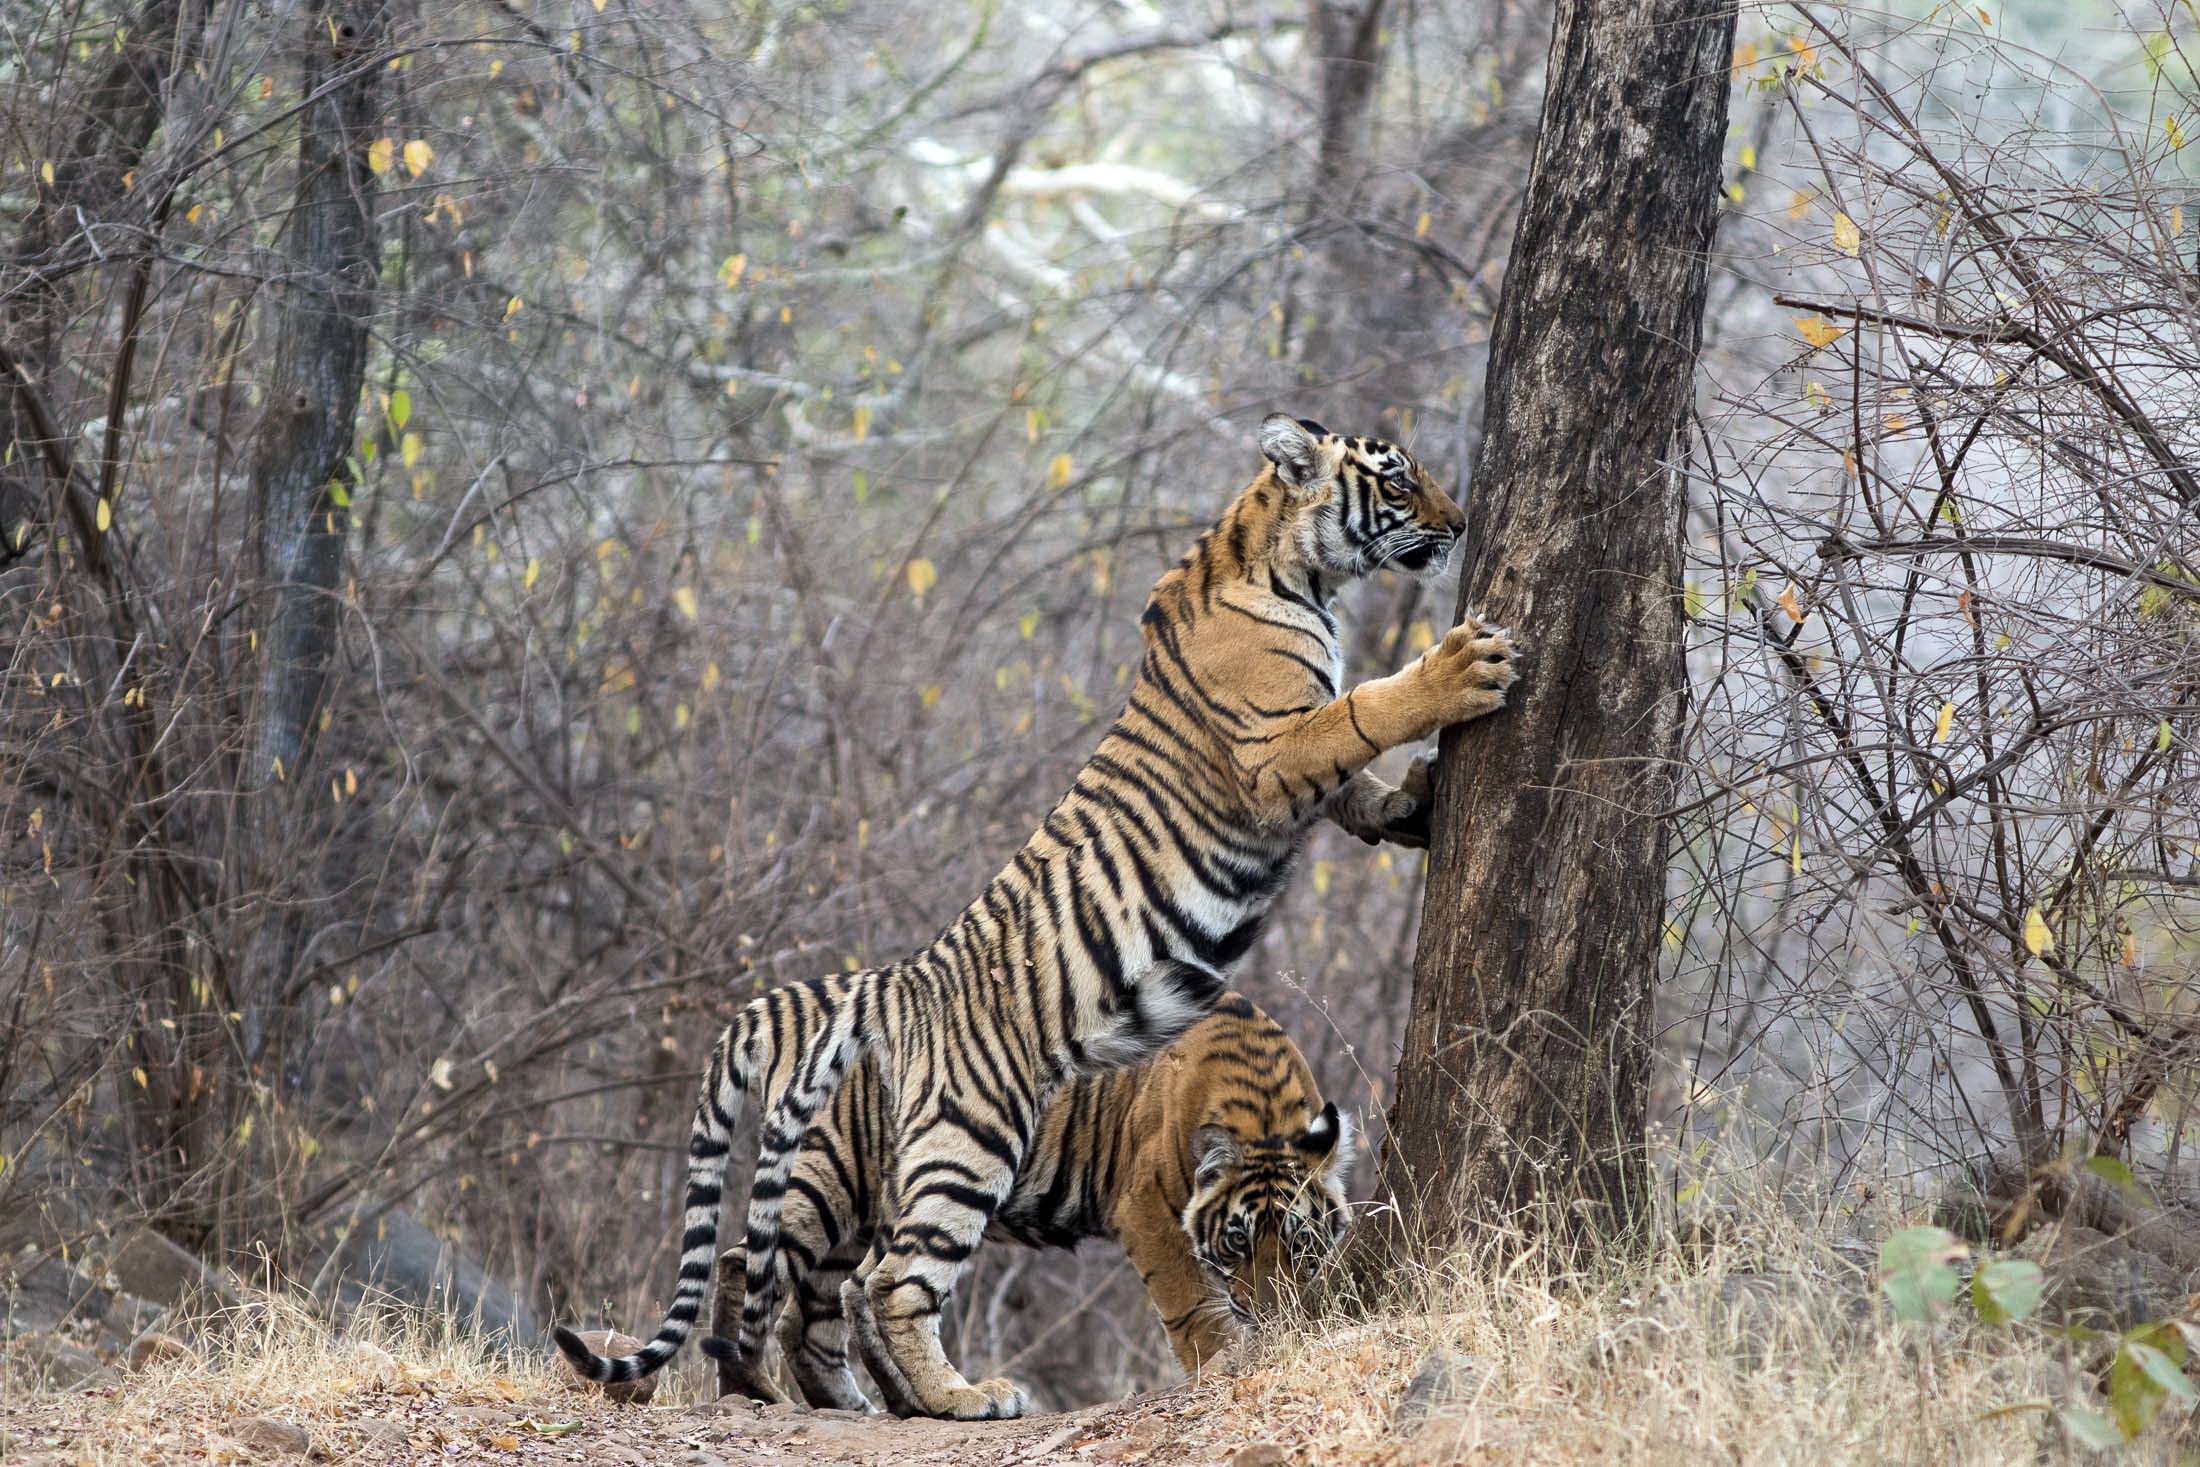 General 2200x1467 tiger India animals mammals big cats